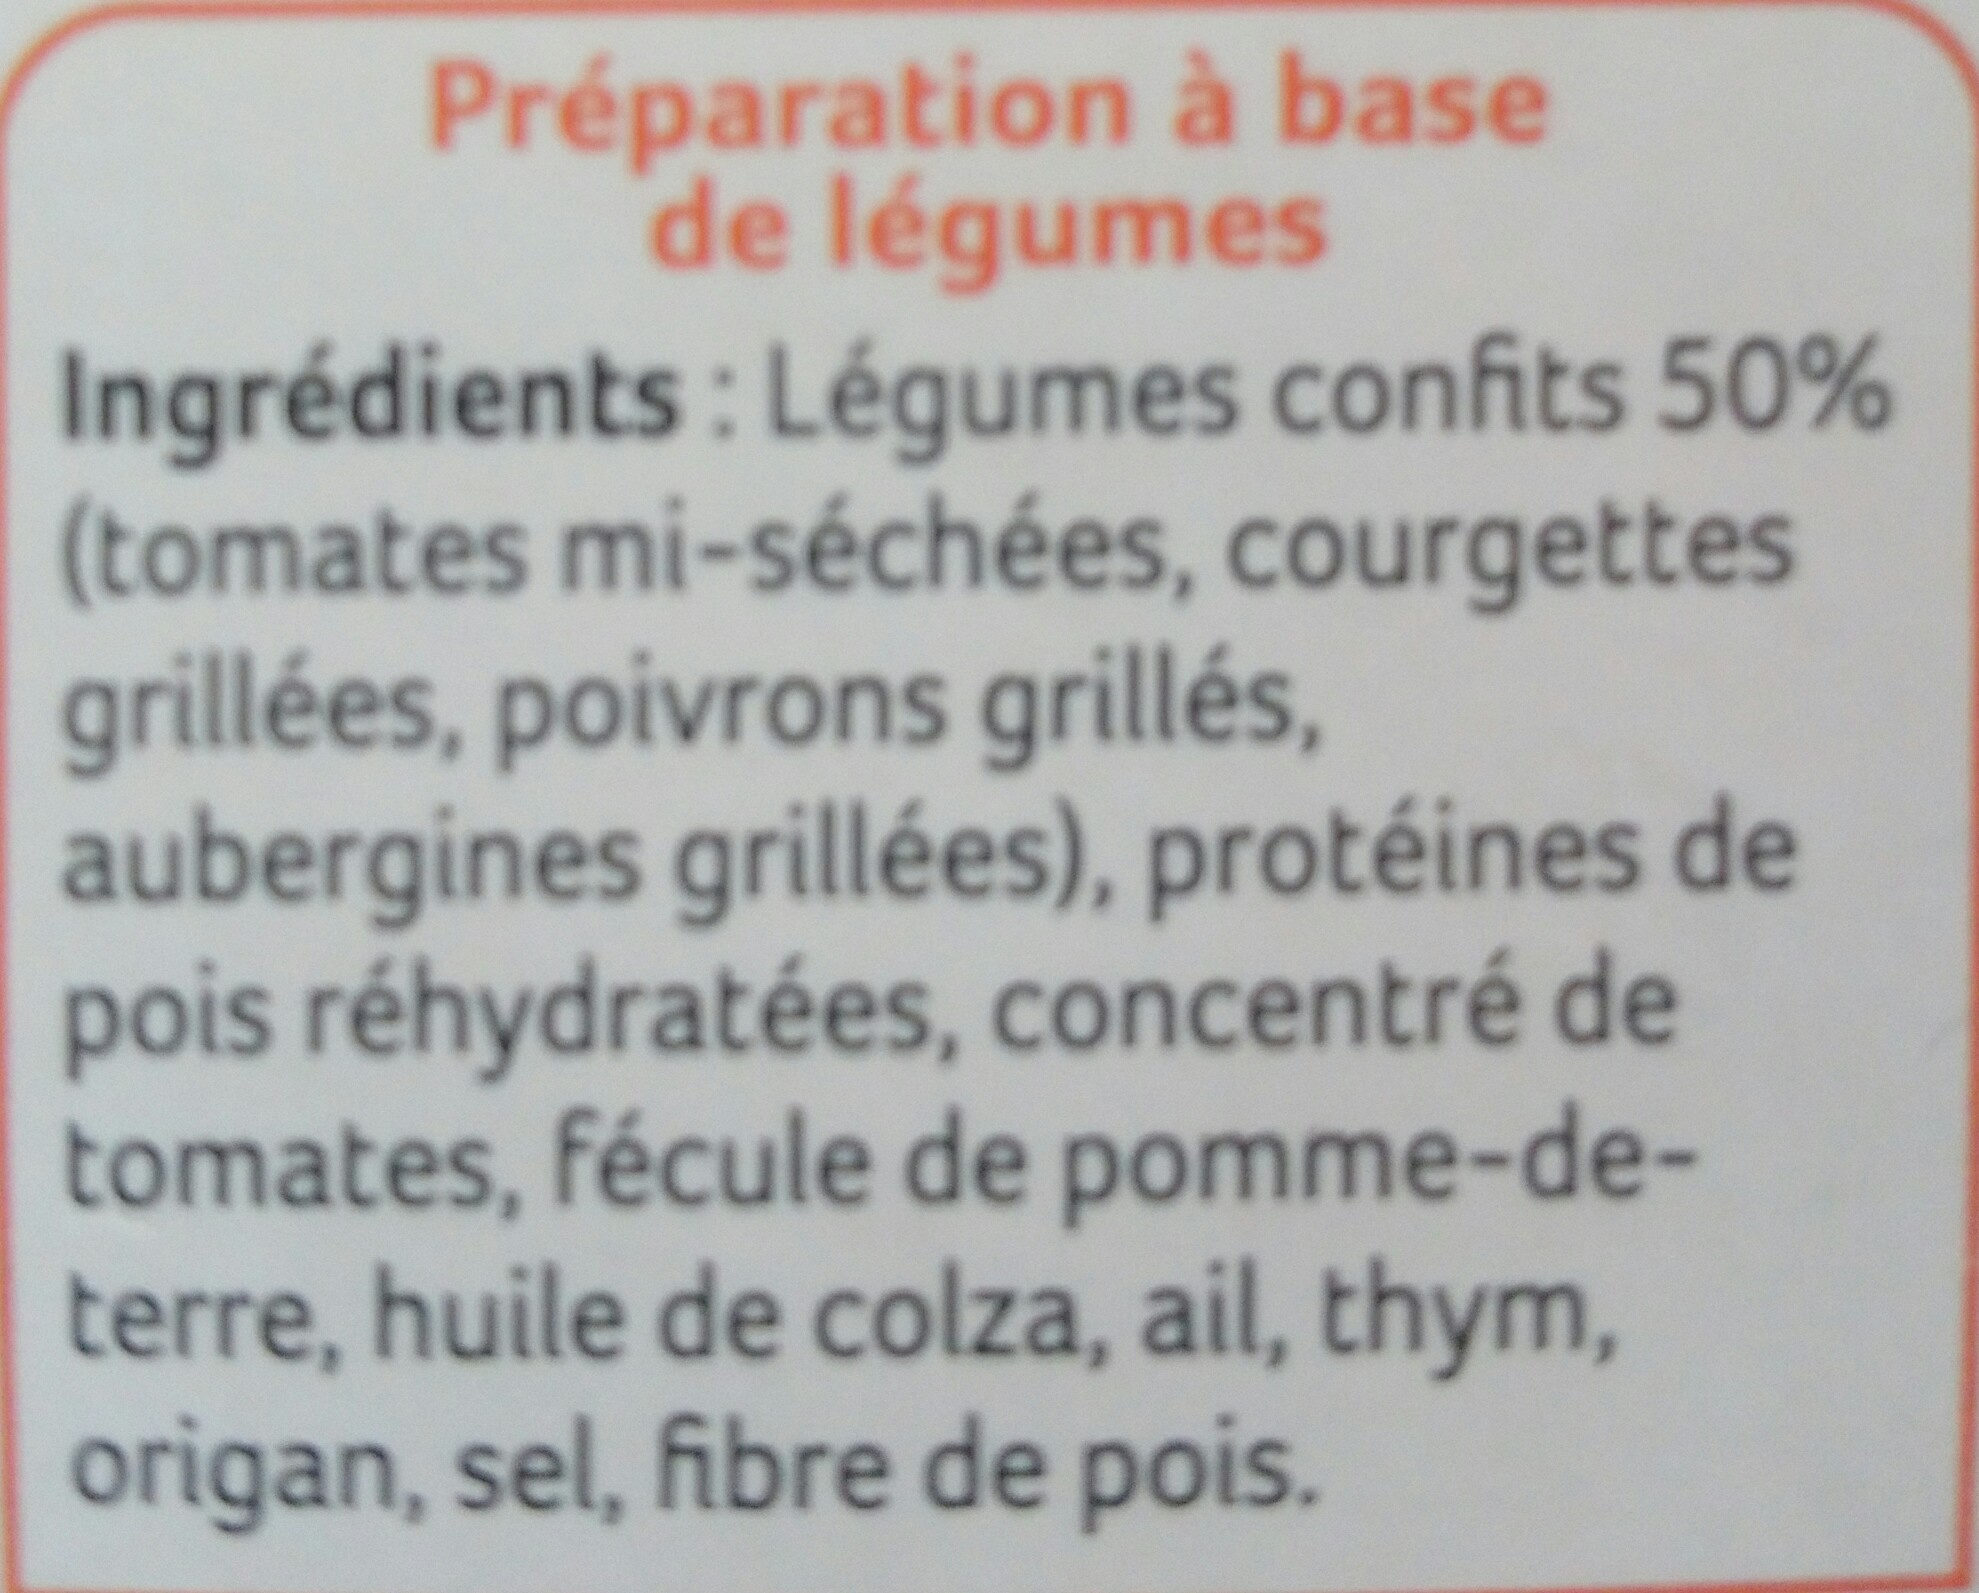 8 galettes aux legumes confits - Ingredients - fr